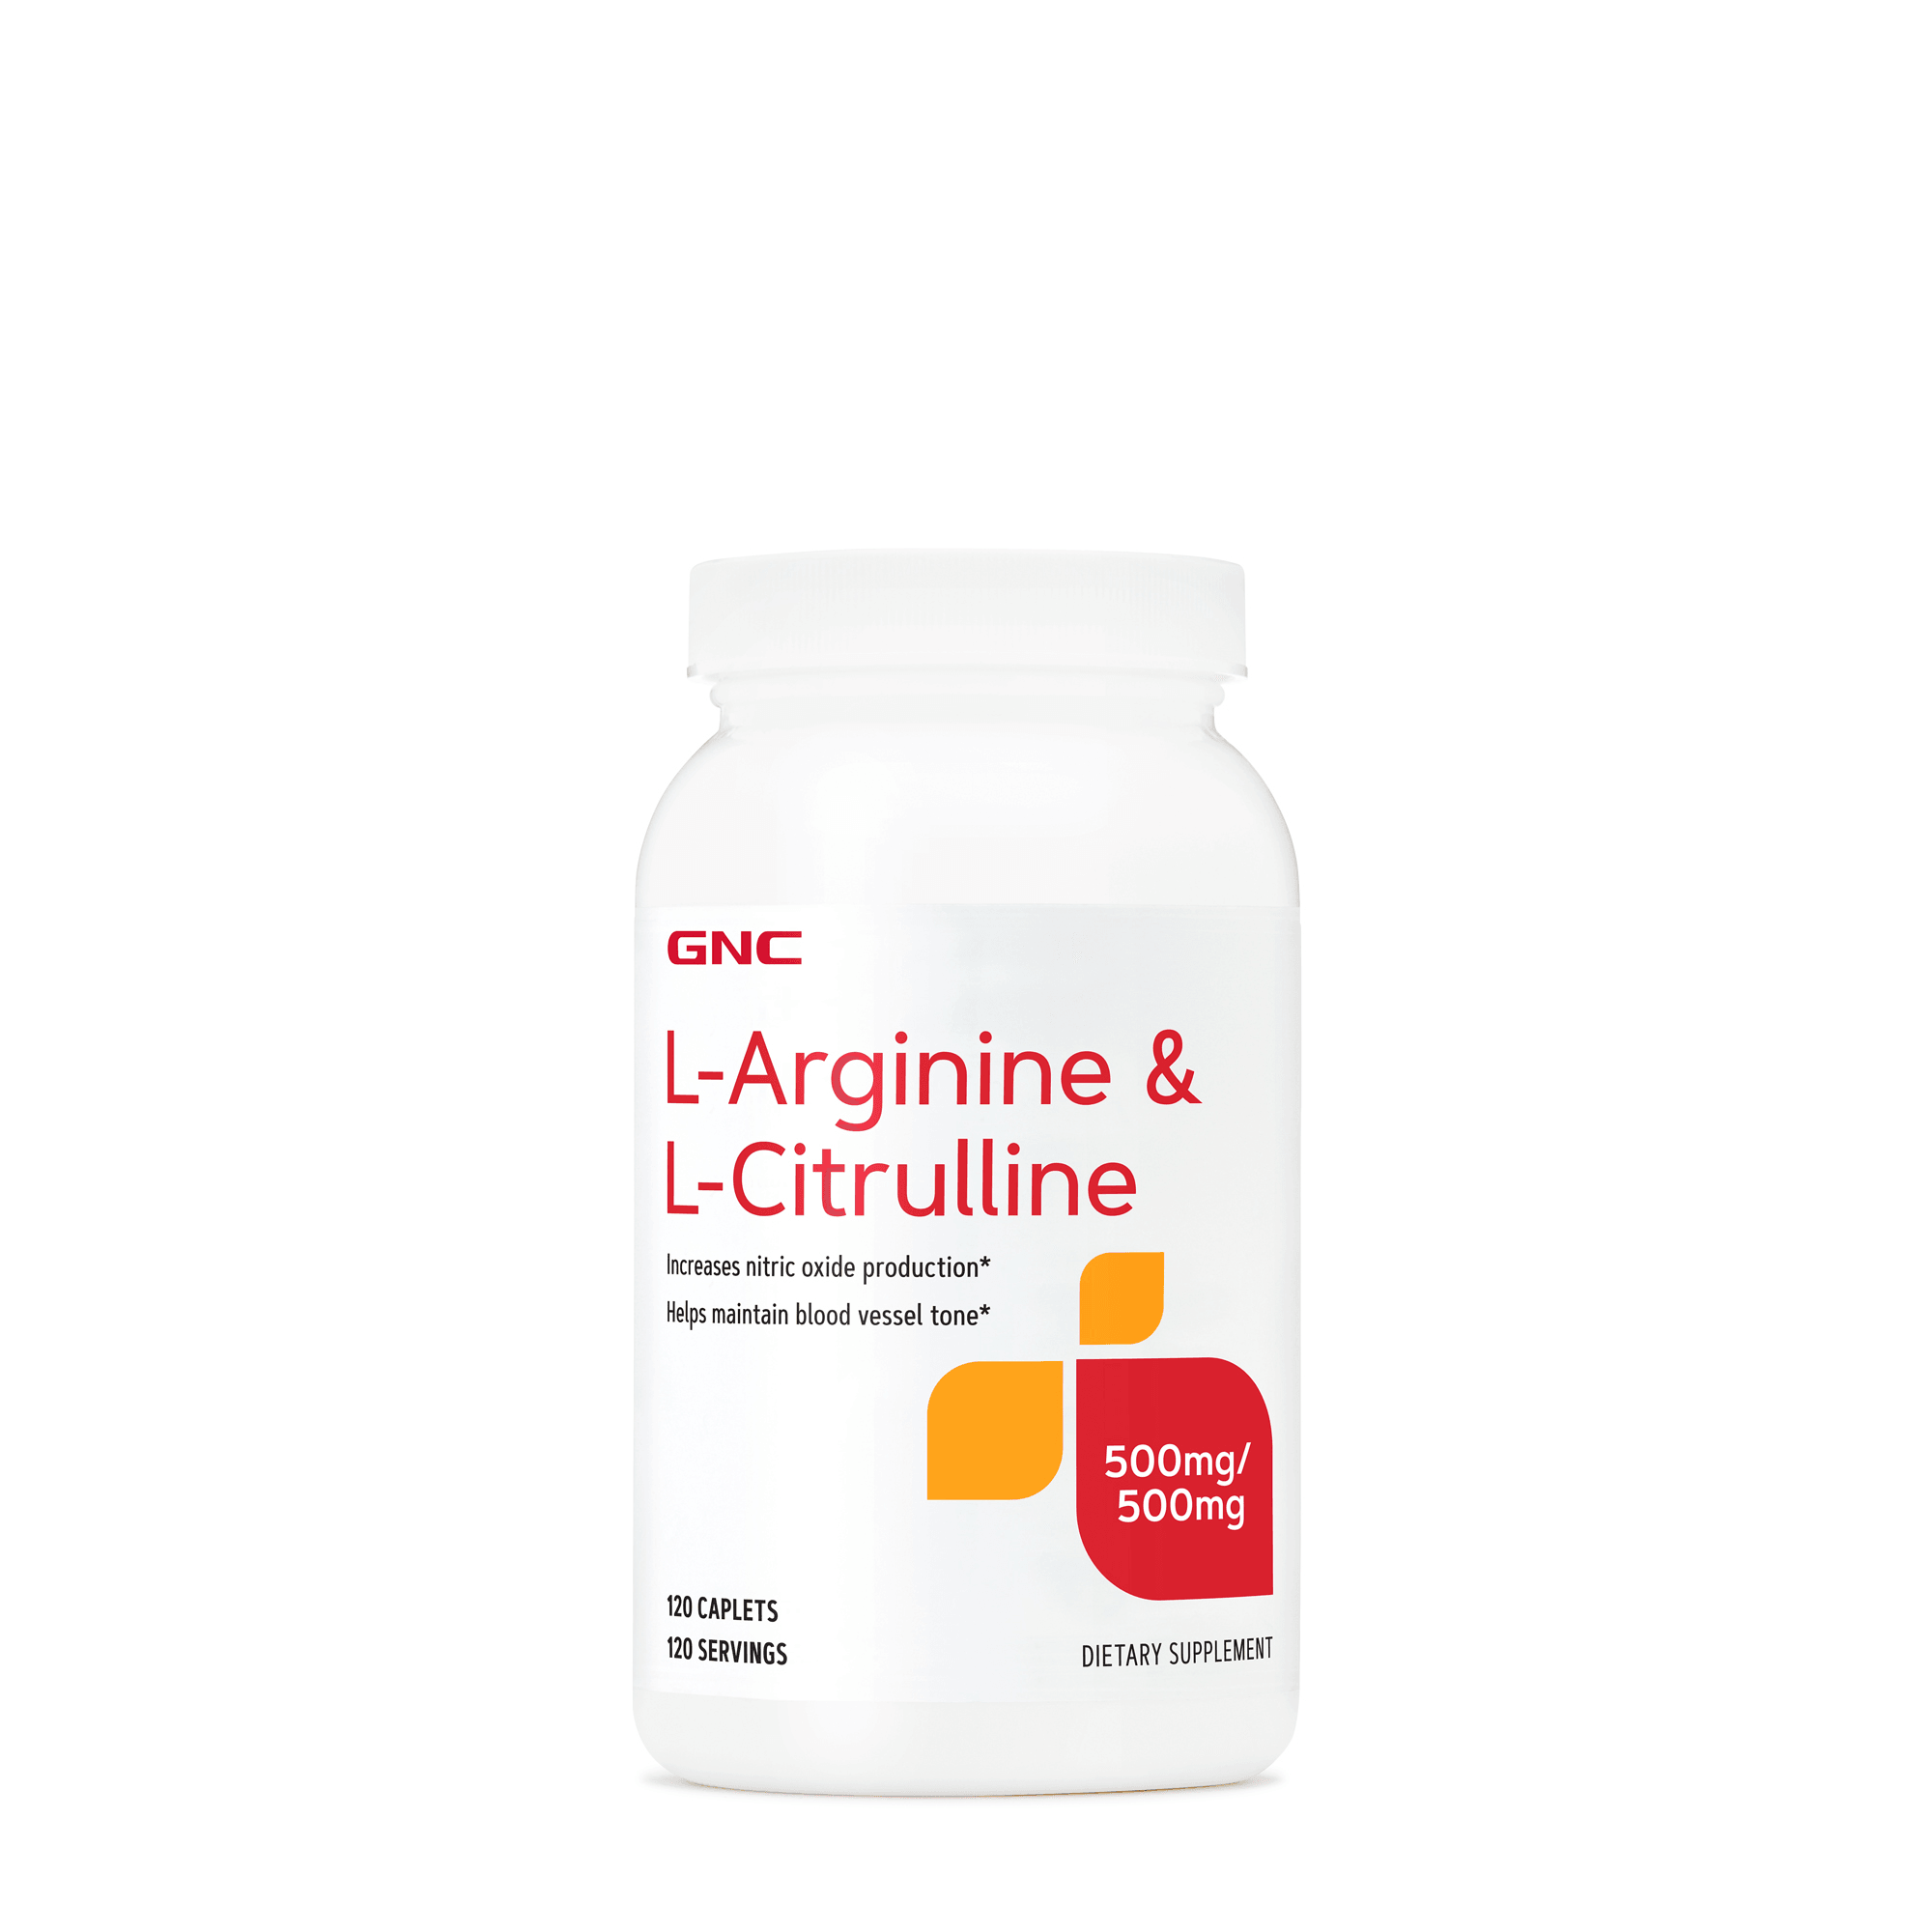 GNC - L-Arginine & L-Citrulline - ORAS OFFICIAL